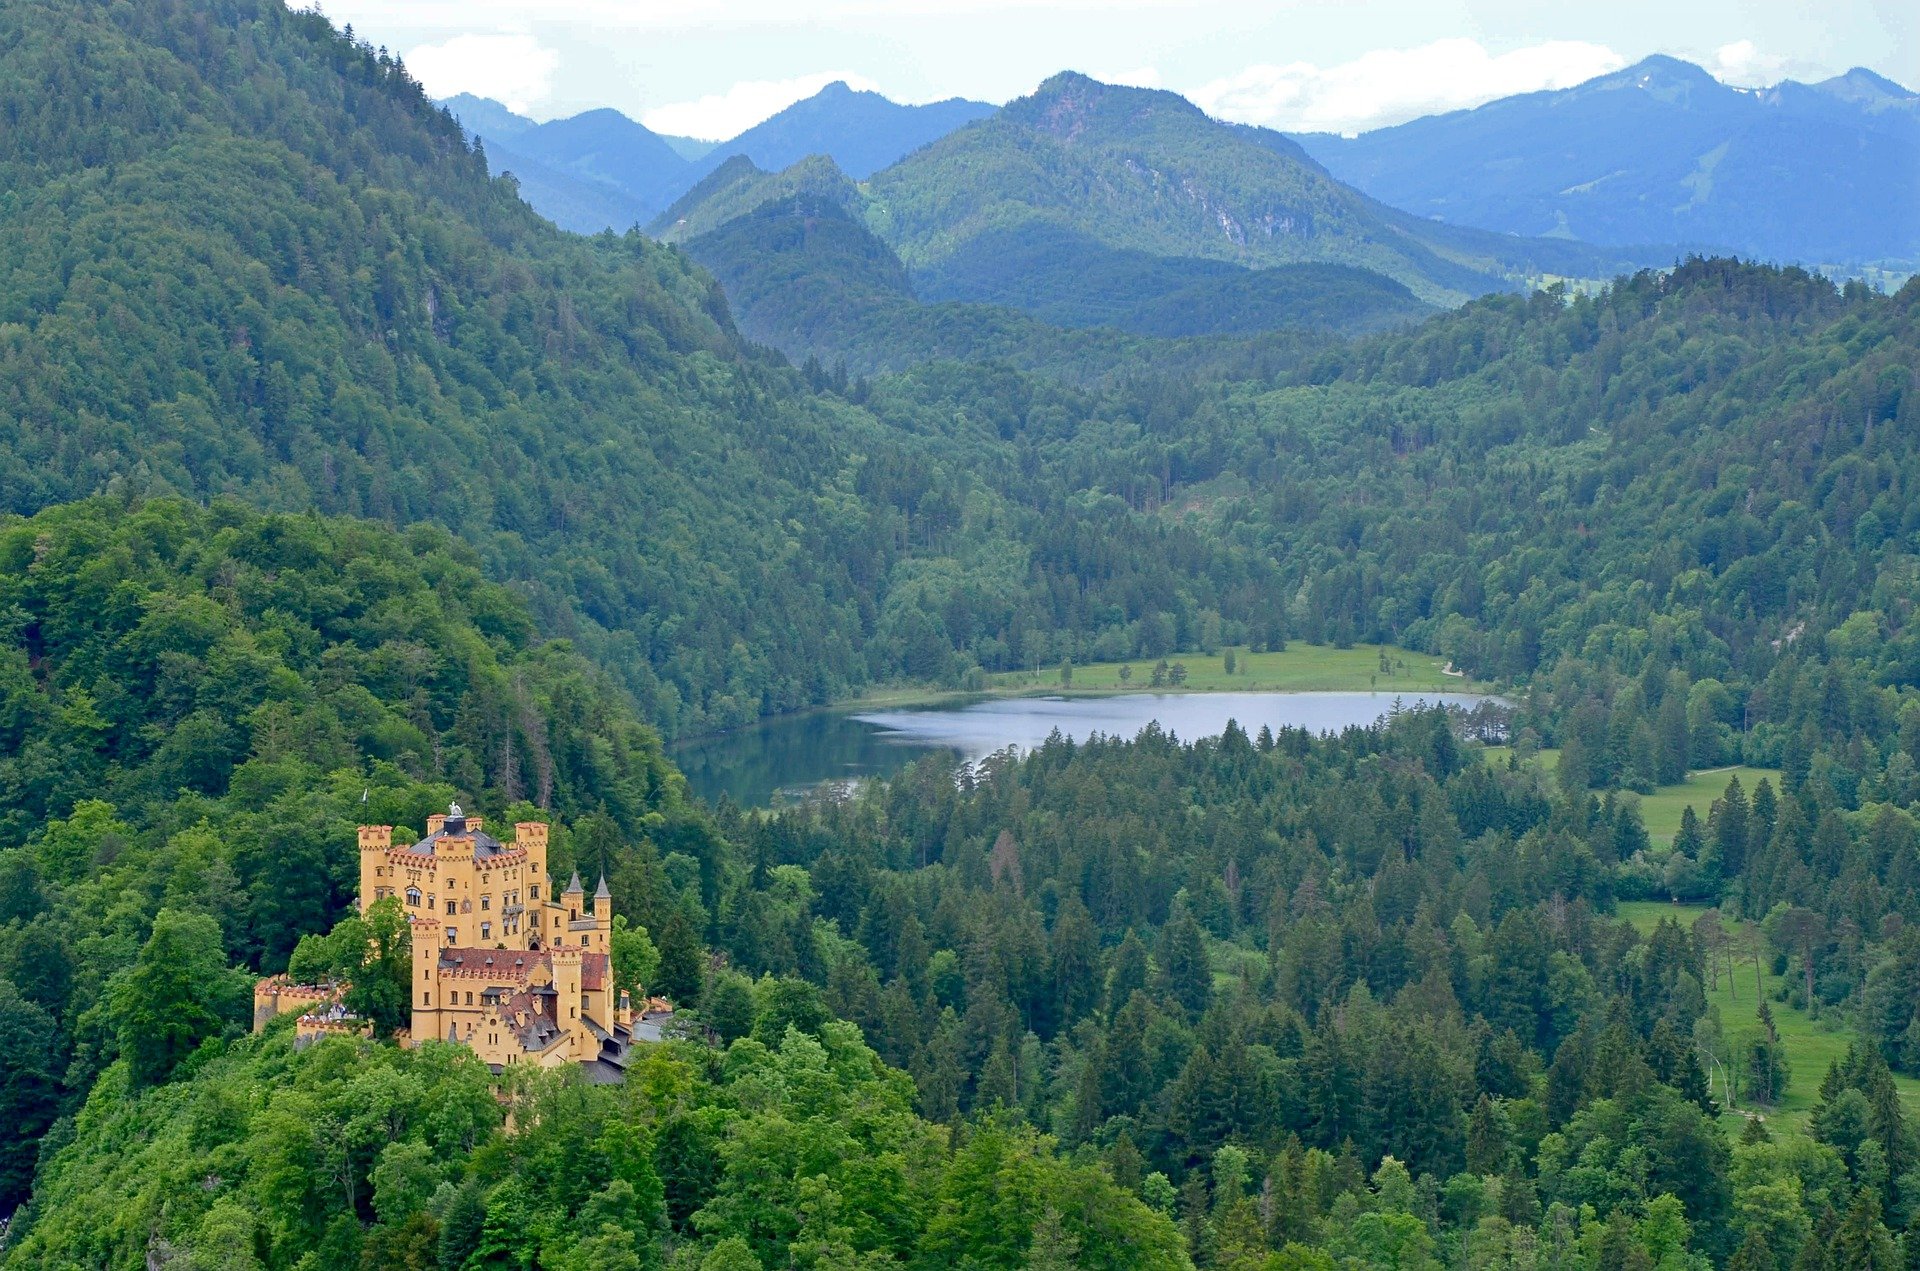 Das Schloss Hohenschwangau inmitten von grünem Wald in Bayern, Deutschland.